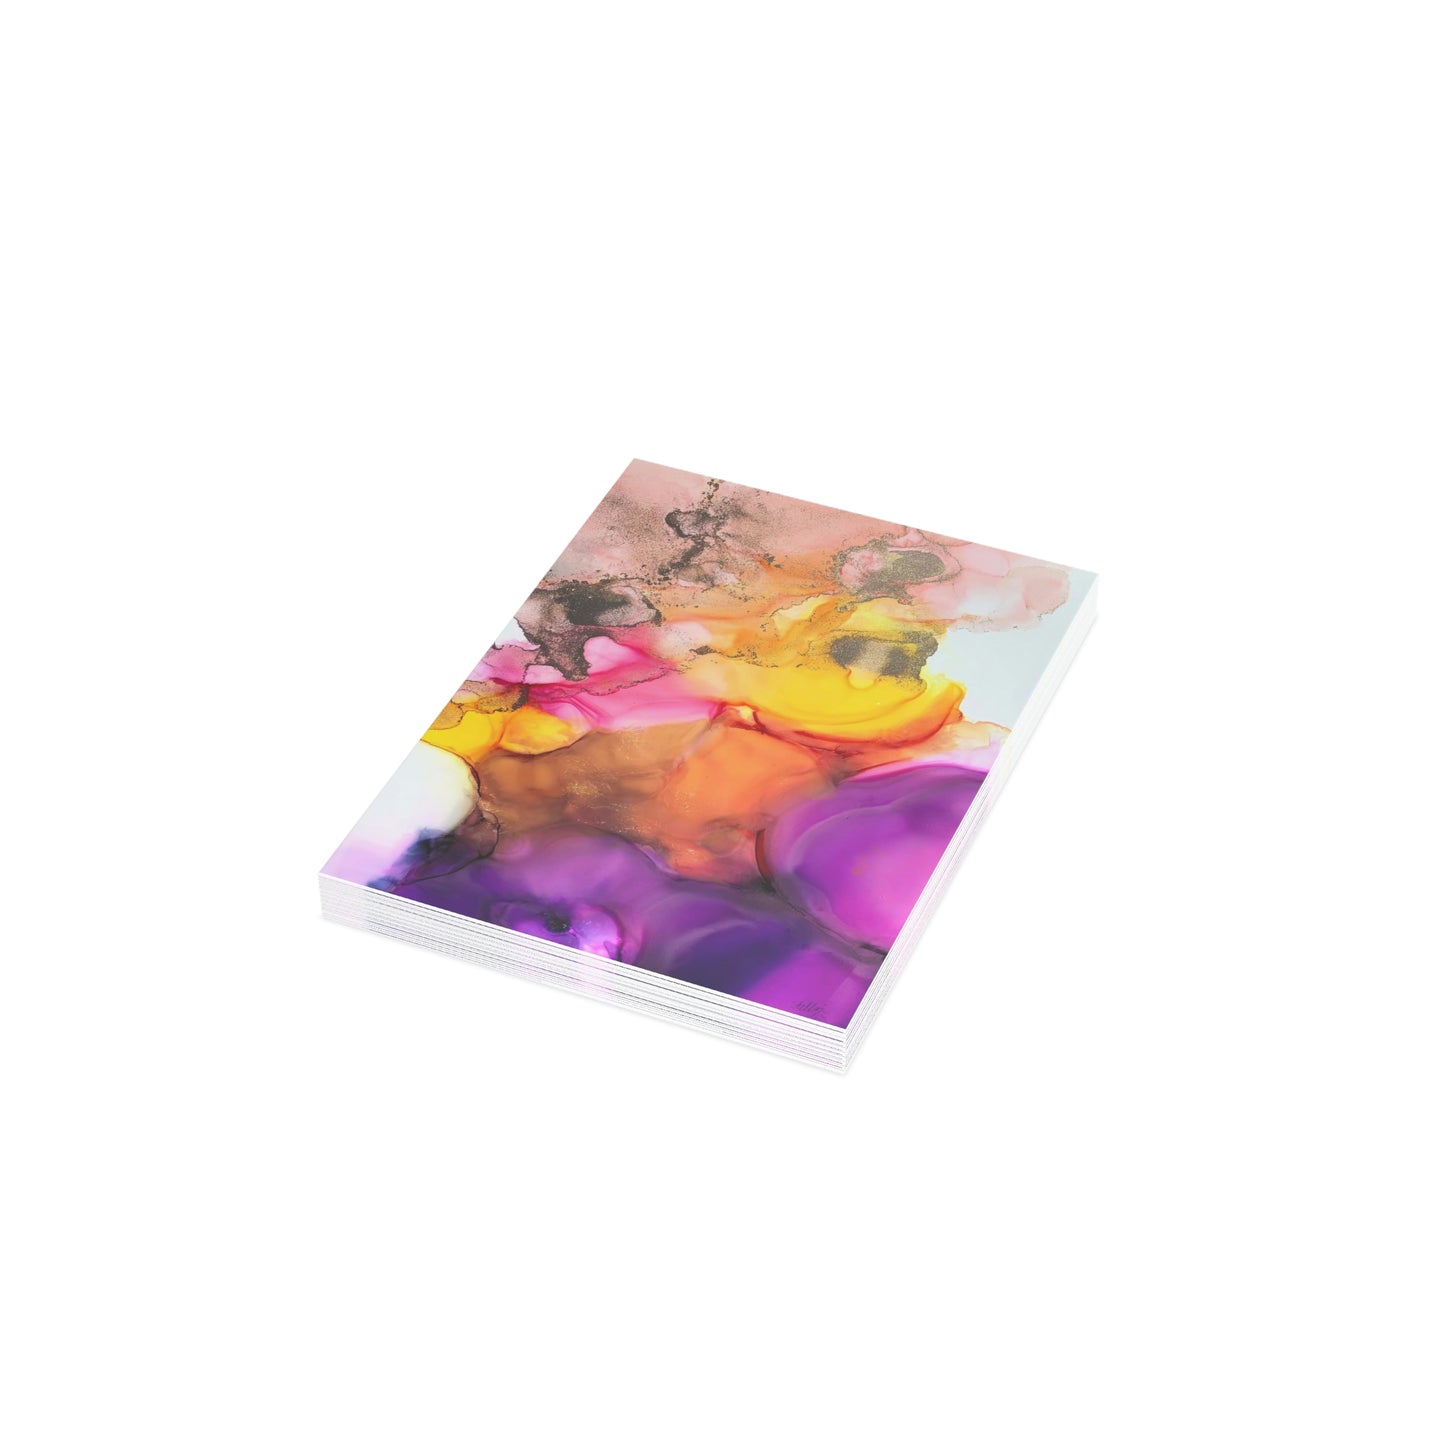 'Not so Prim Primrose' - Spring Magic Collection - Greeting Card Bundles (10, 30, 50 pcs)